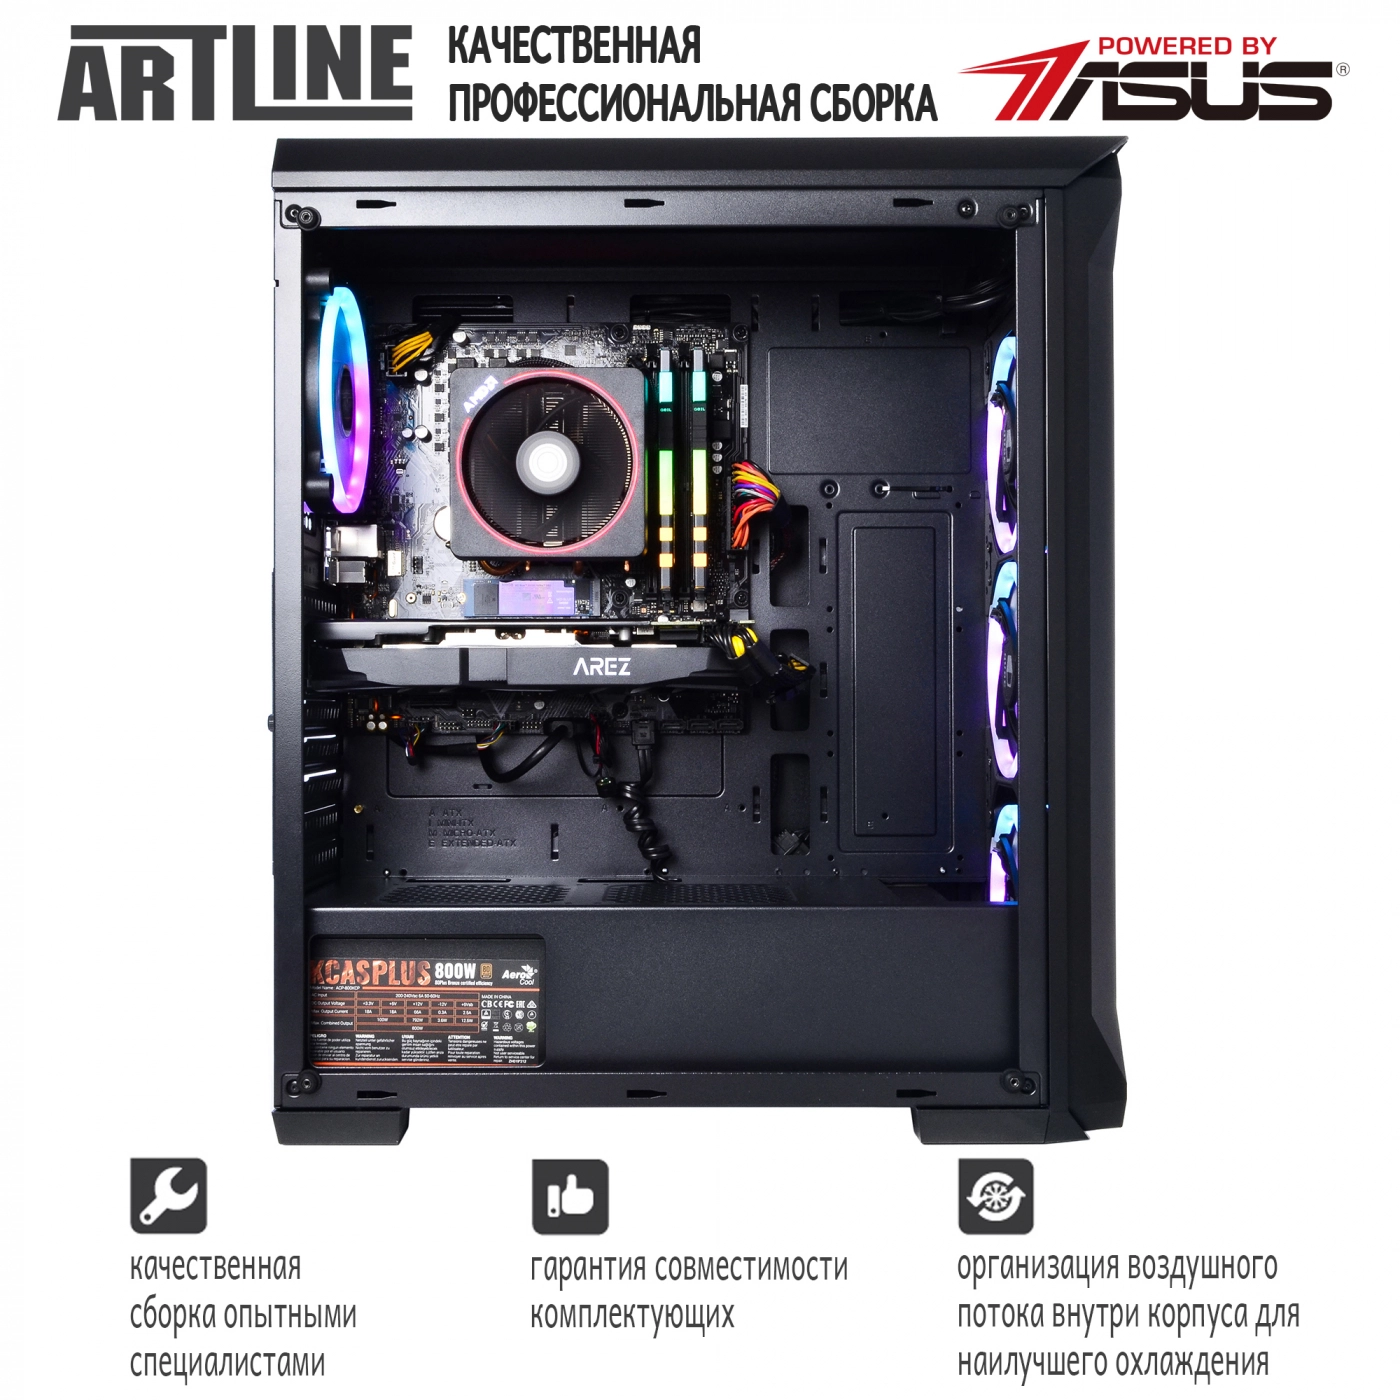 Купить Компьютер ARTLINE Gaming X87v15 - фото 4